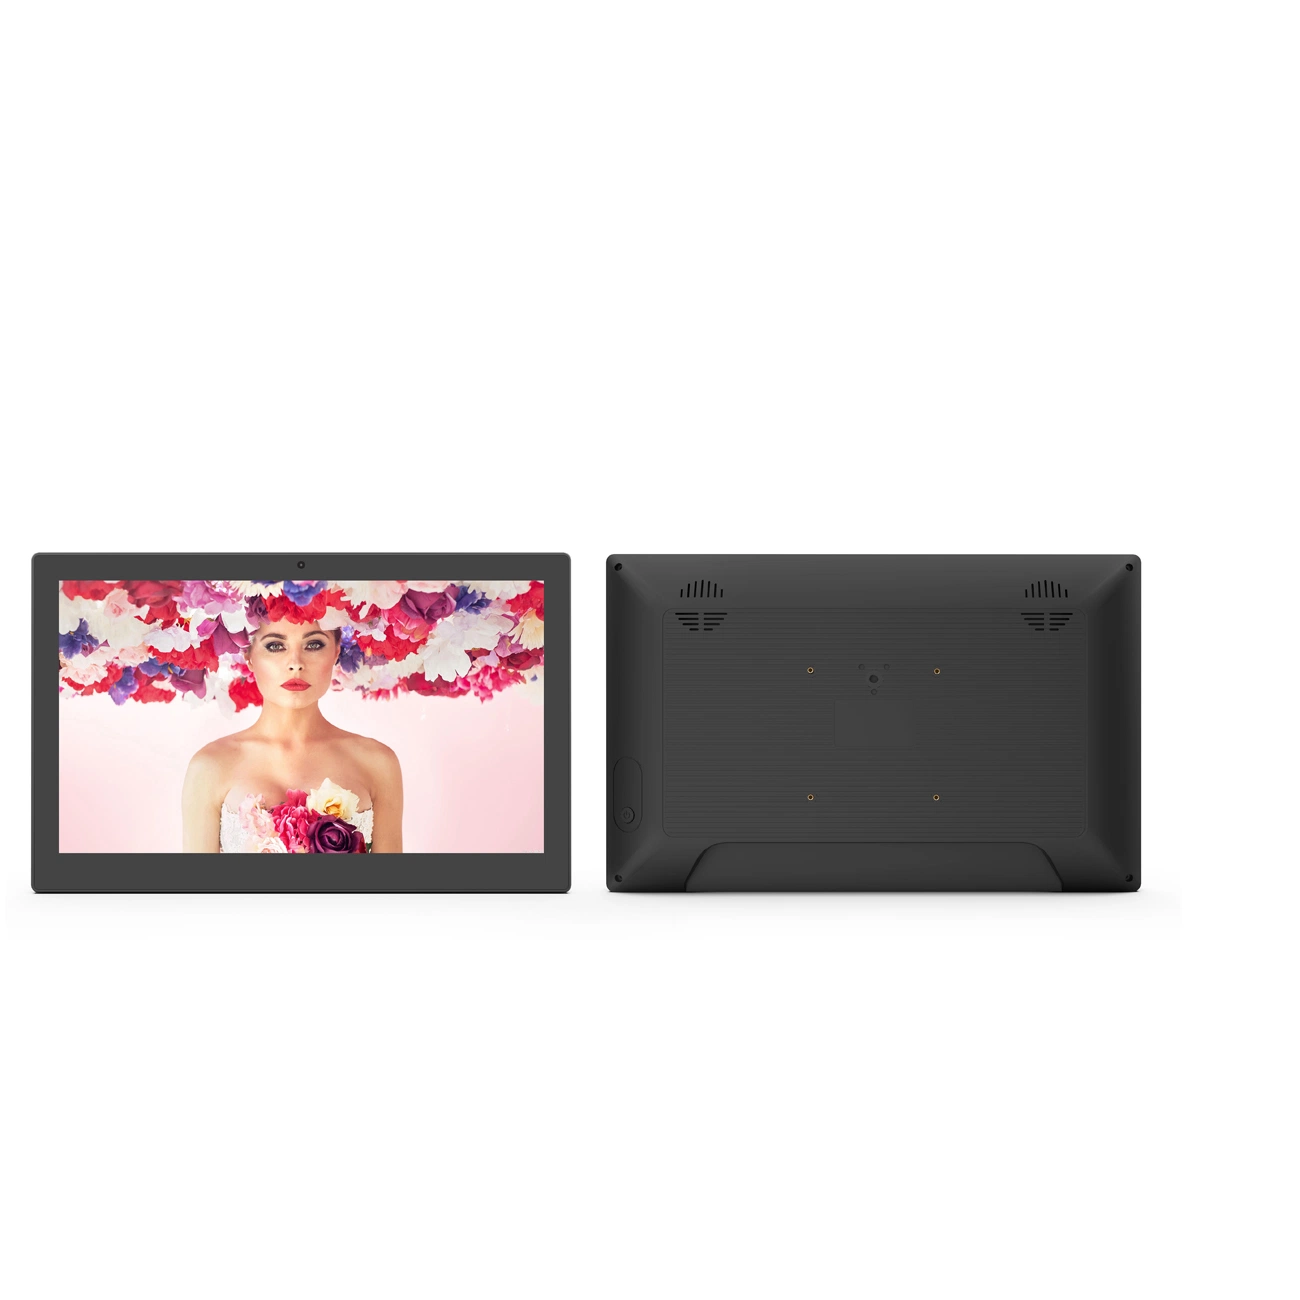 Comercio al por mayor 13.3/15.6 pulgadas de pantalla táctil capacitiva de pared RJ45 WiFi USB SD LCD Digital Signage NFC en el interior de la pantalla táctil LCD comercial